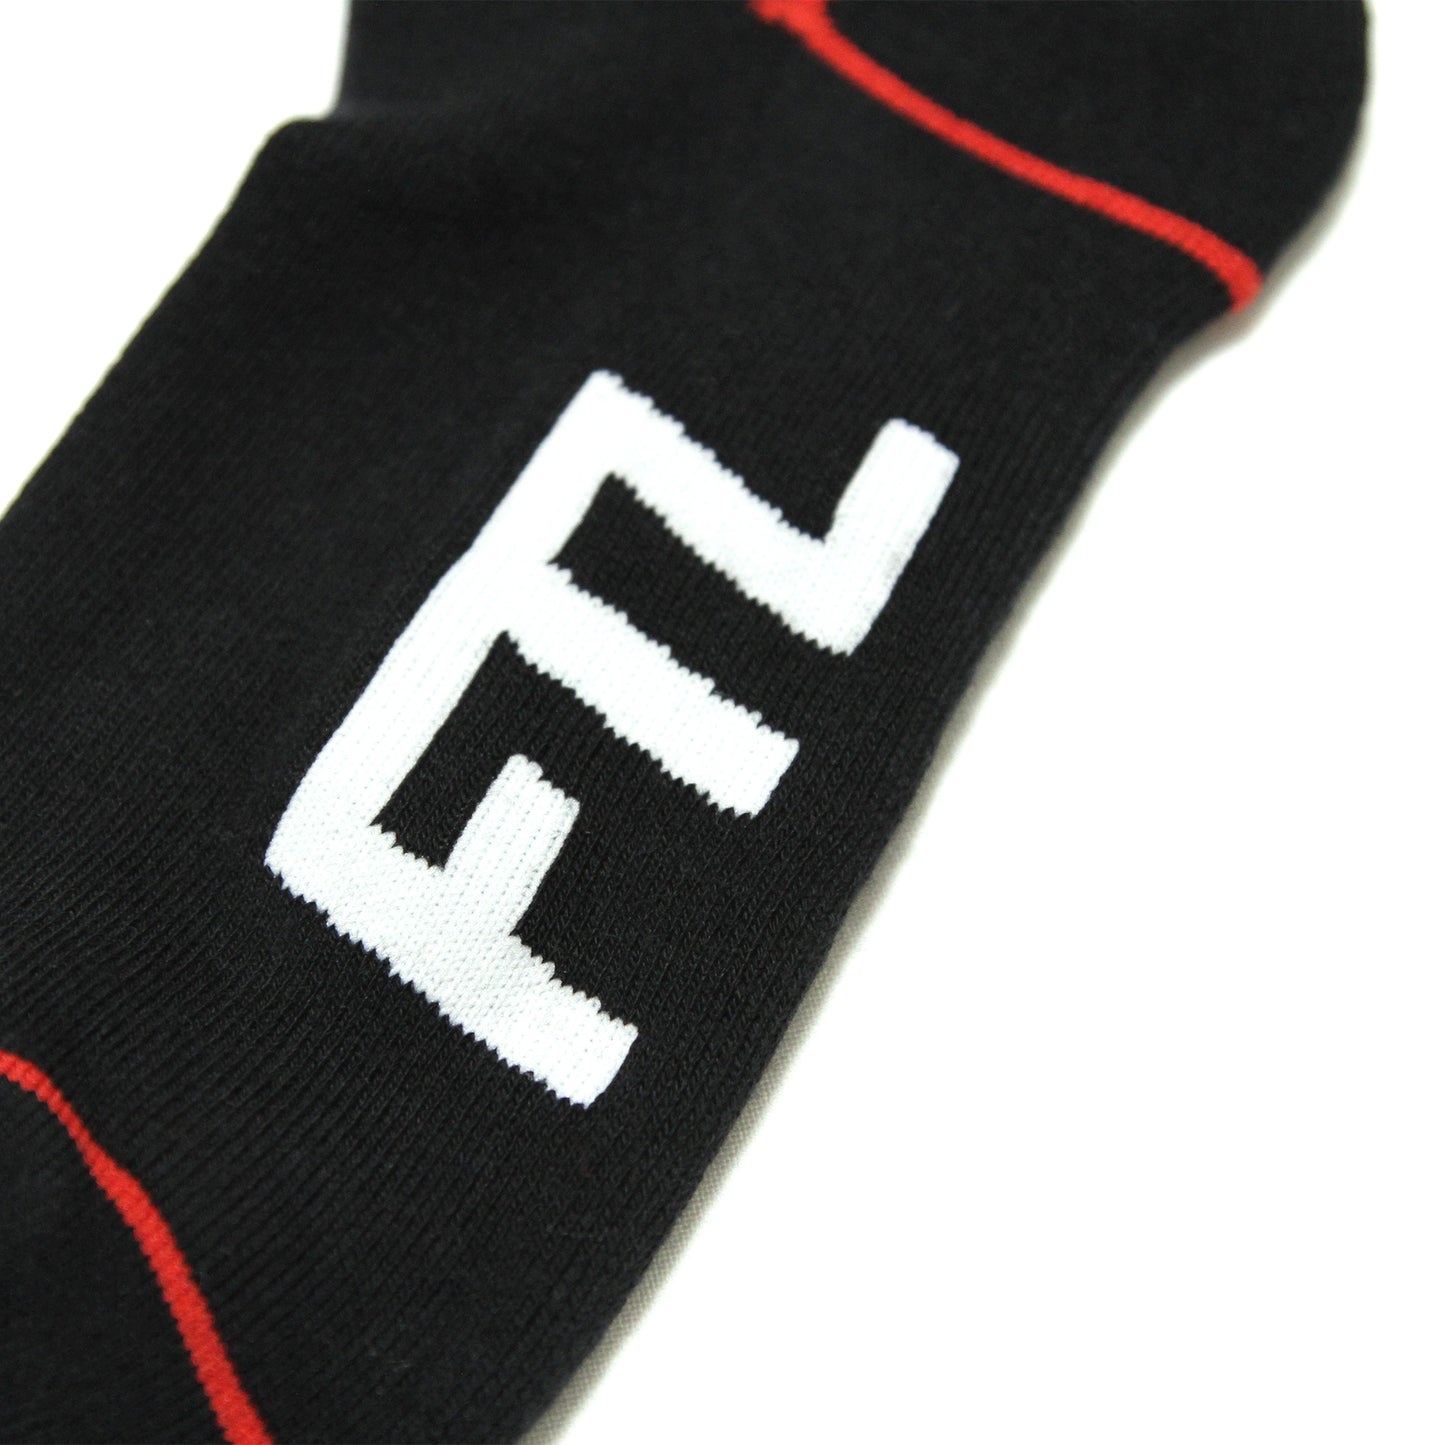 FTL - Apple Socks/Black